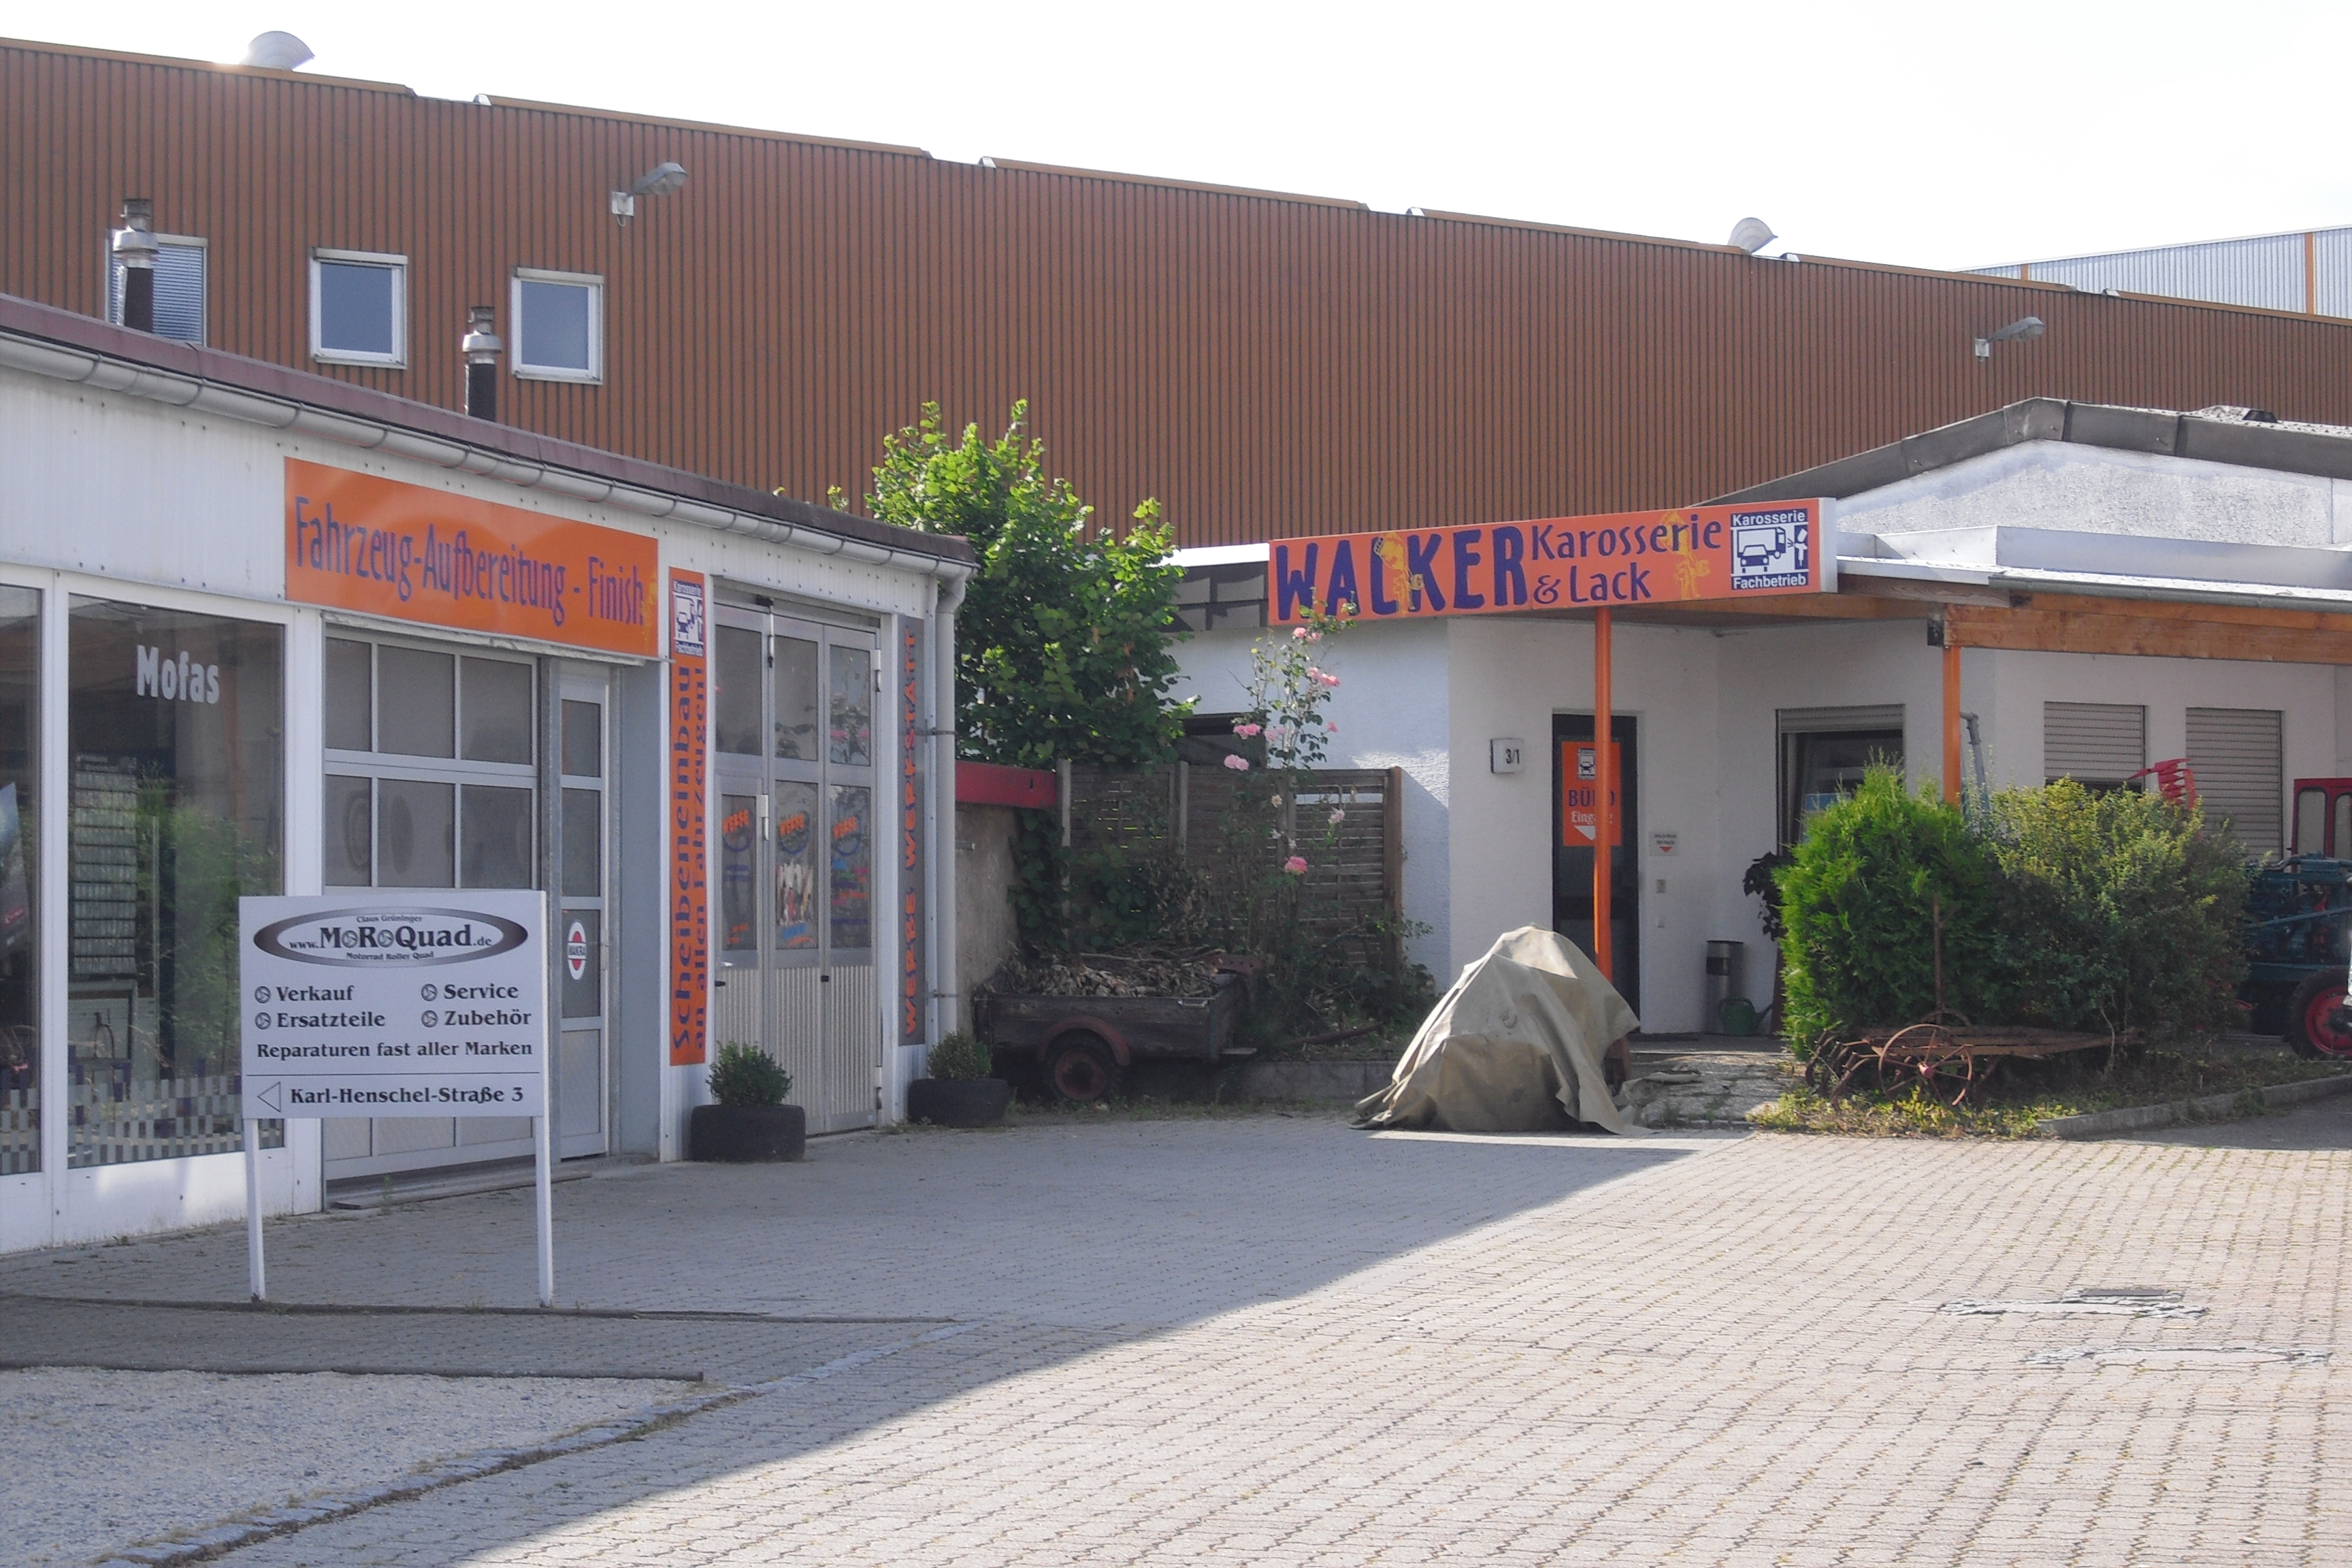 Bild 1 Walker Karosserie & Lack in Reutlingen